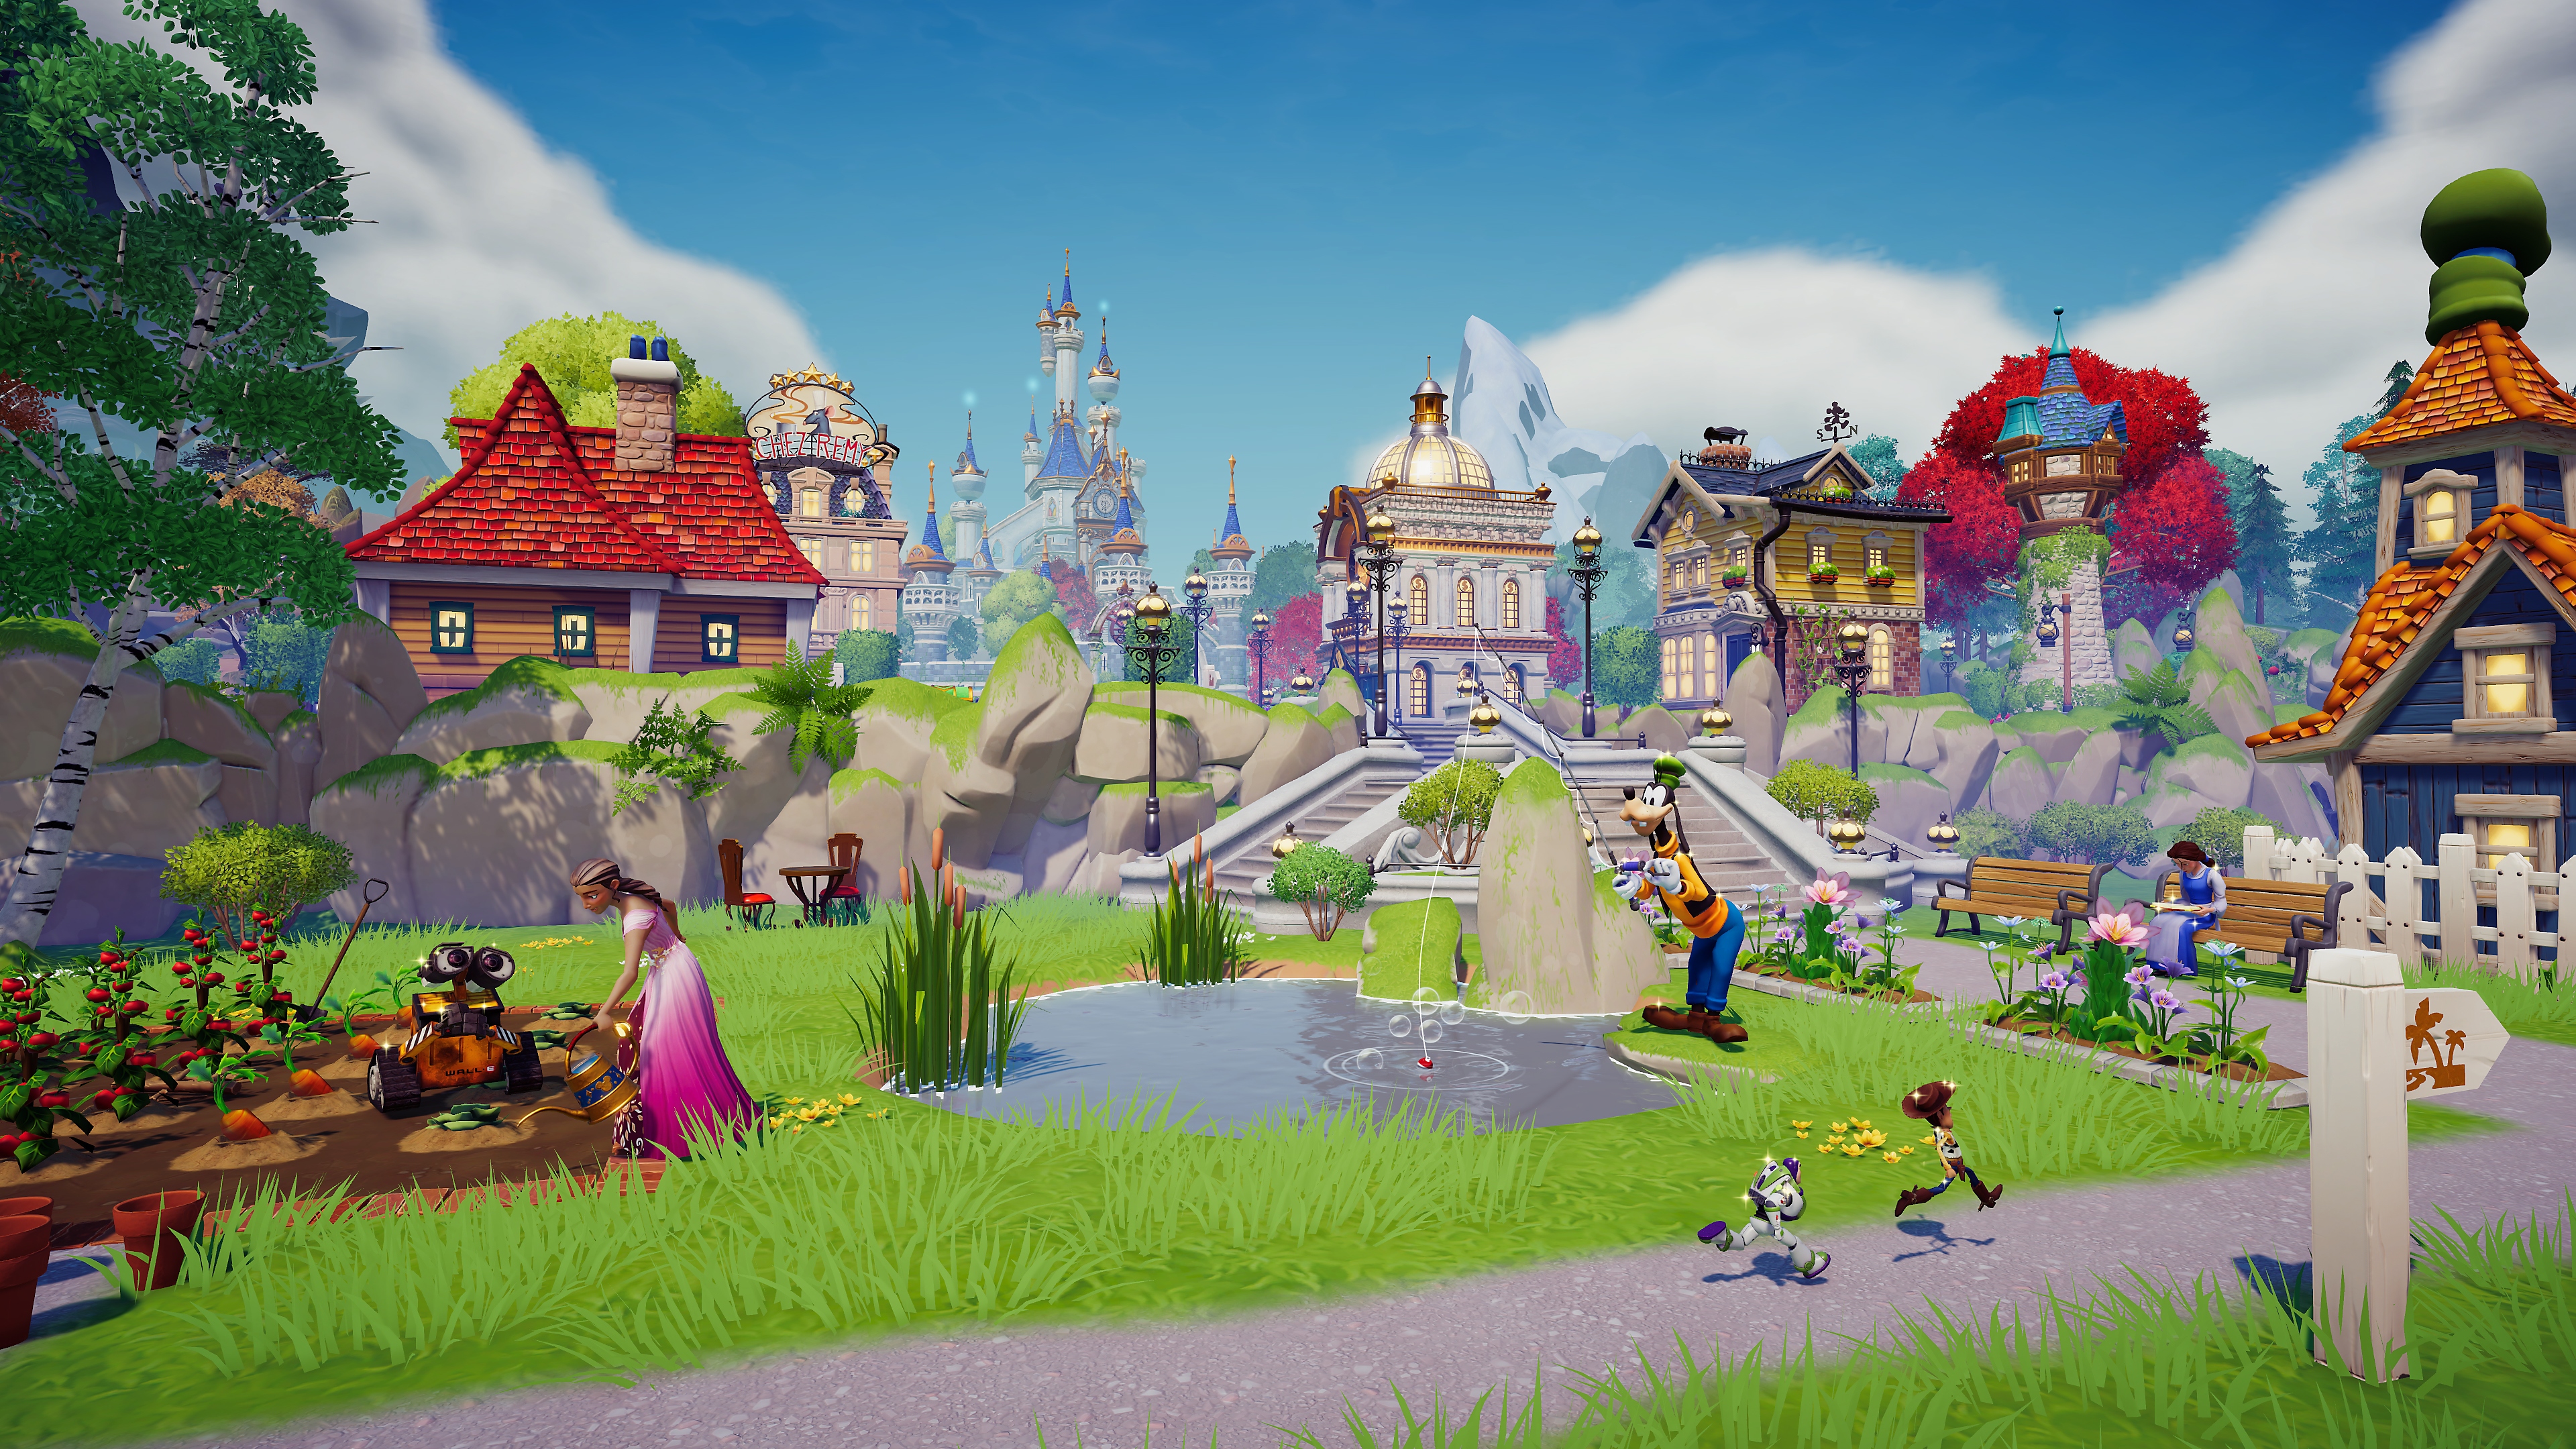 Disney Dreamlight Valley -pelin kuvakaappaus, jossa näkyy kyläkohtaus